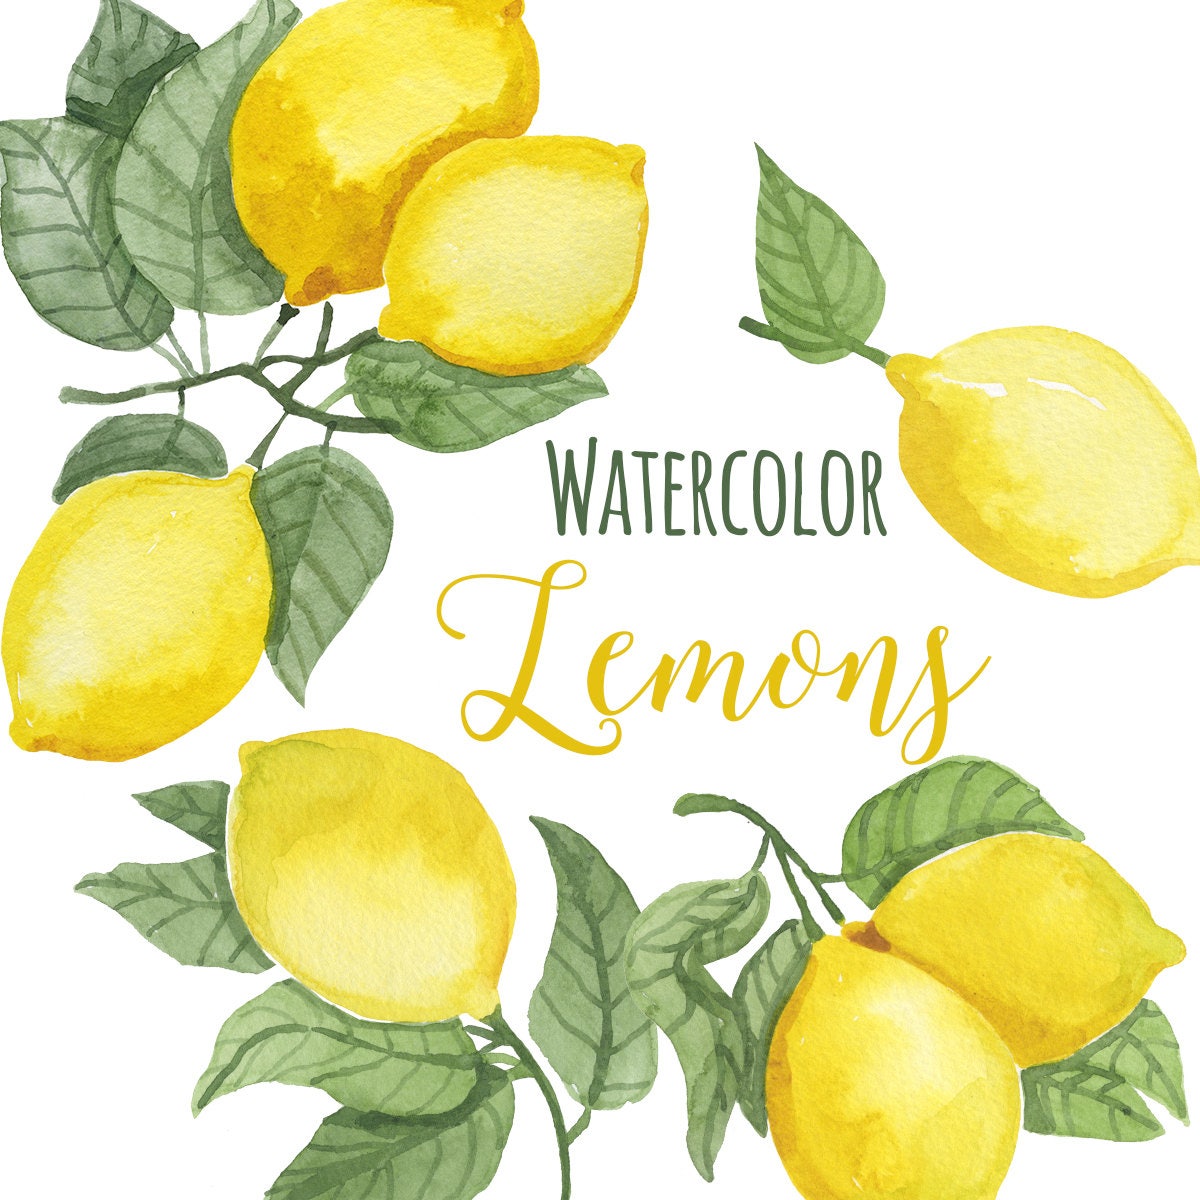 watercolor-lemon-clip-art-trendy-lemon-leaves-clipart-lemons-etsy